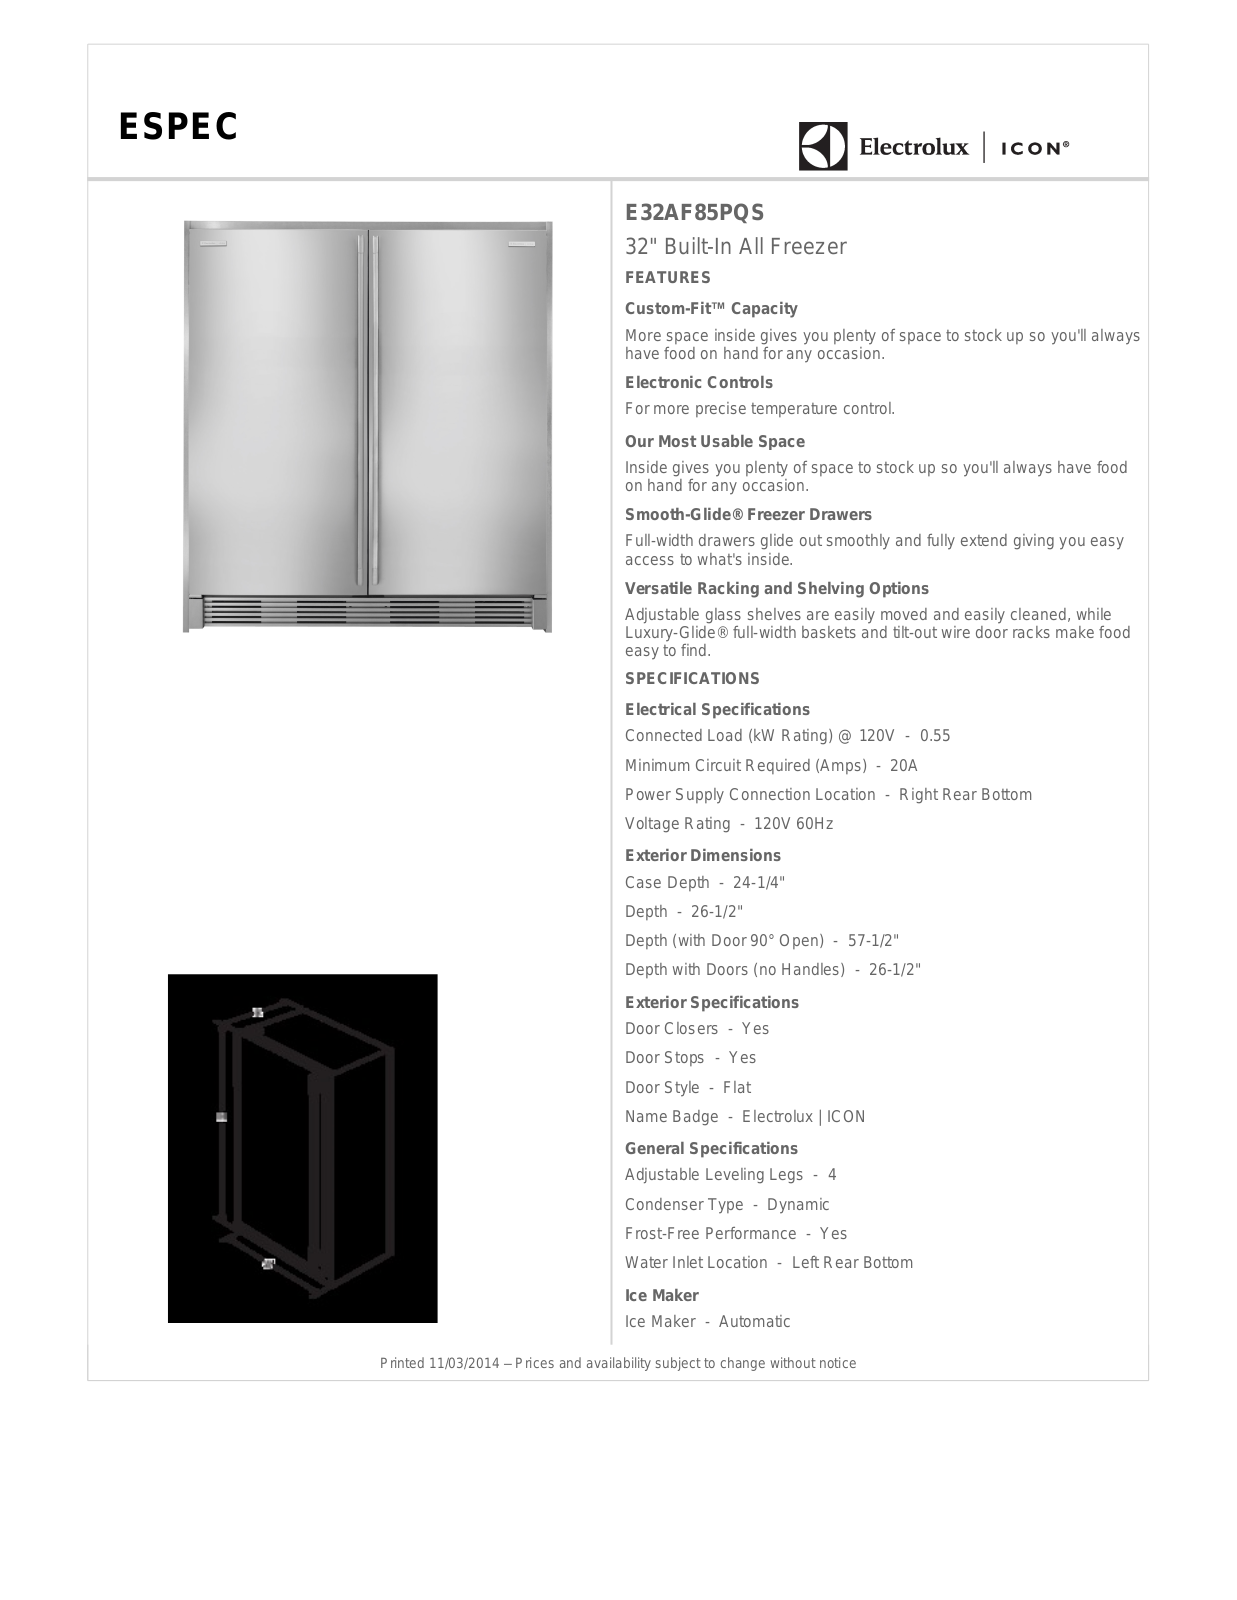 Electrolux E32AF85PQS Specification Sheet